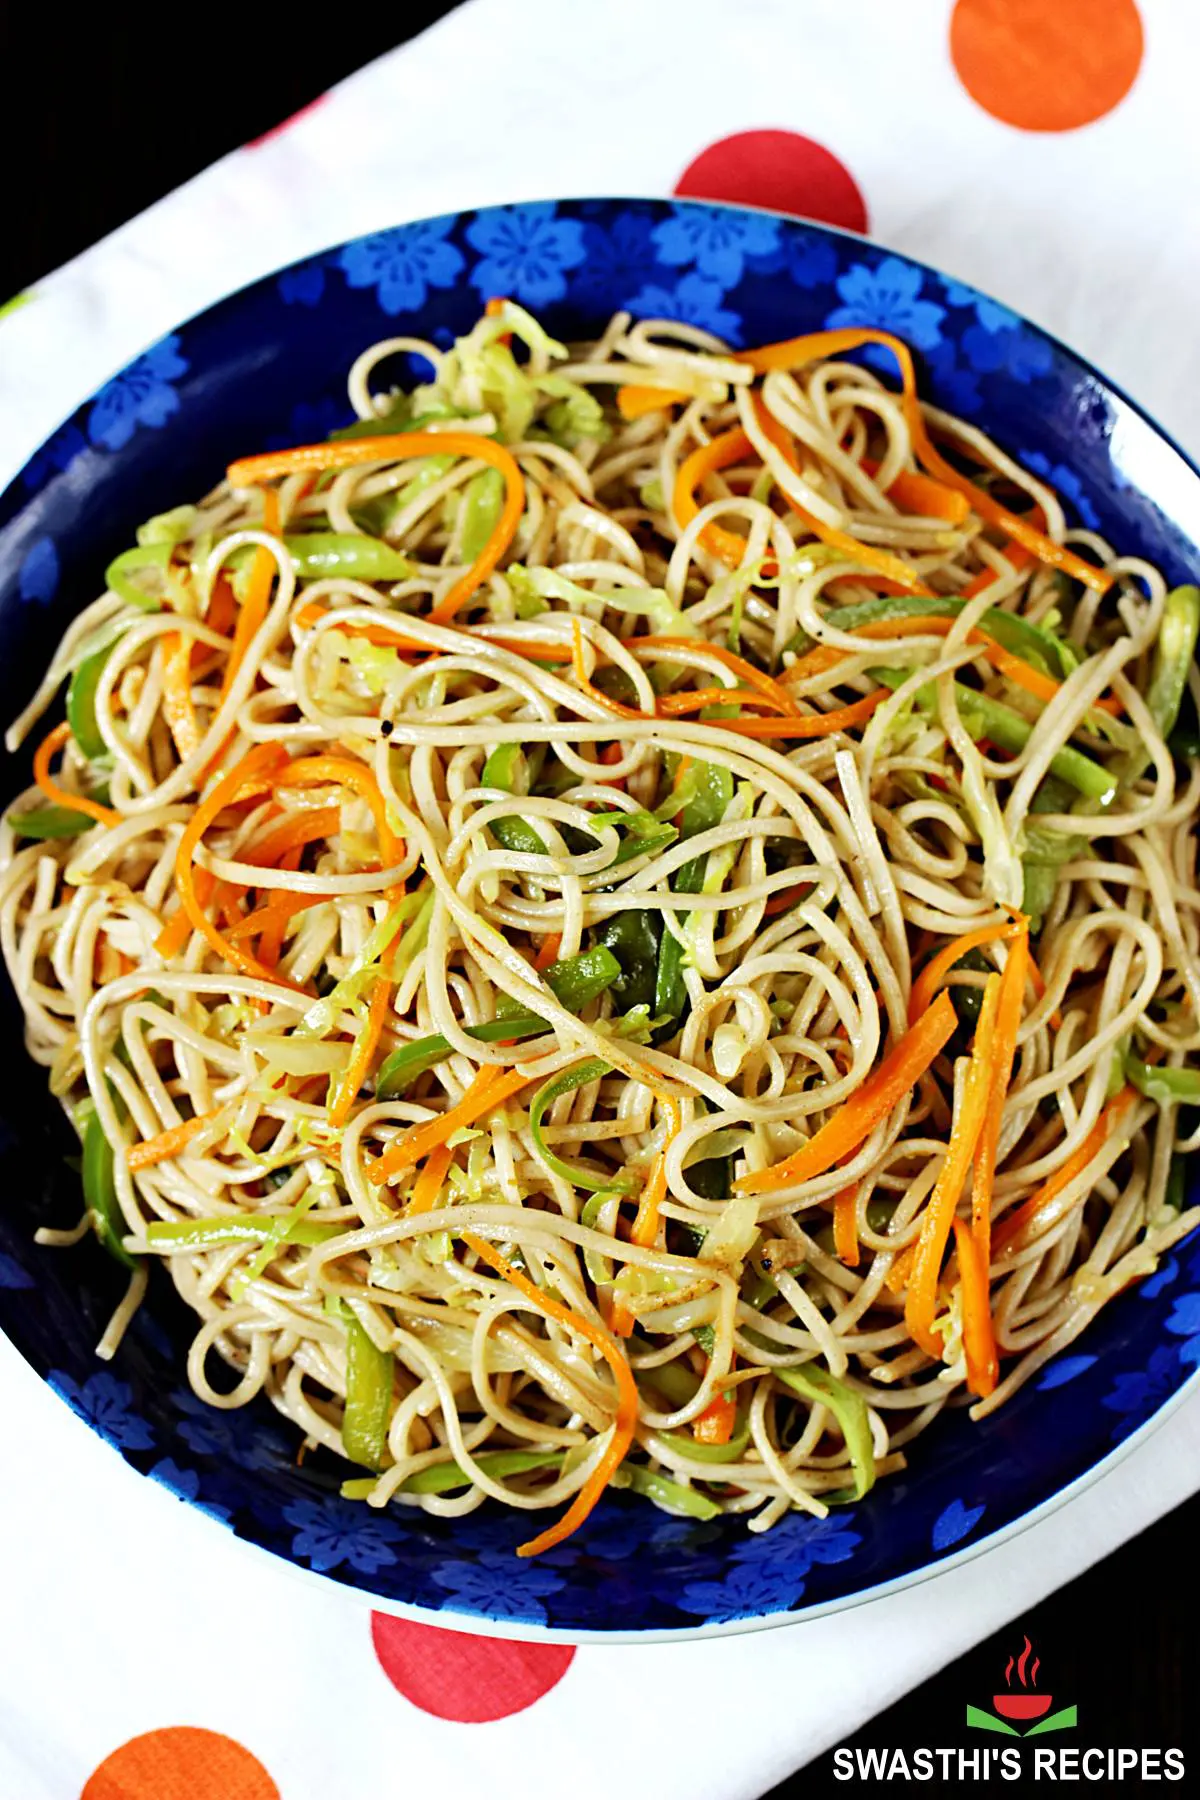 https://www.indianhealthyrecipes.com/wp-content/uploads/2022/02/veg-noodles-vegetable-noodles.jpg.webp